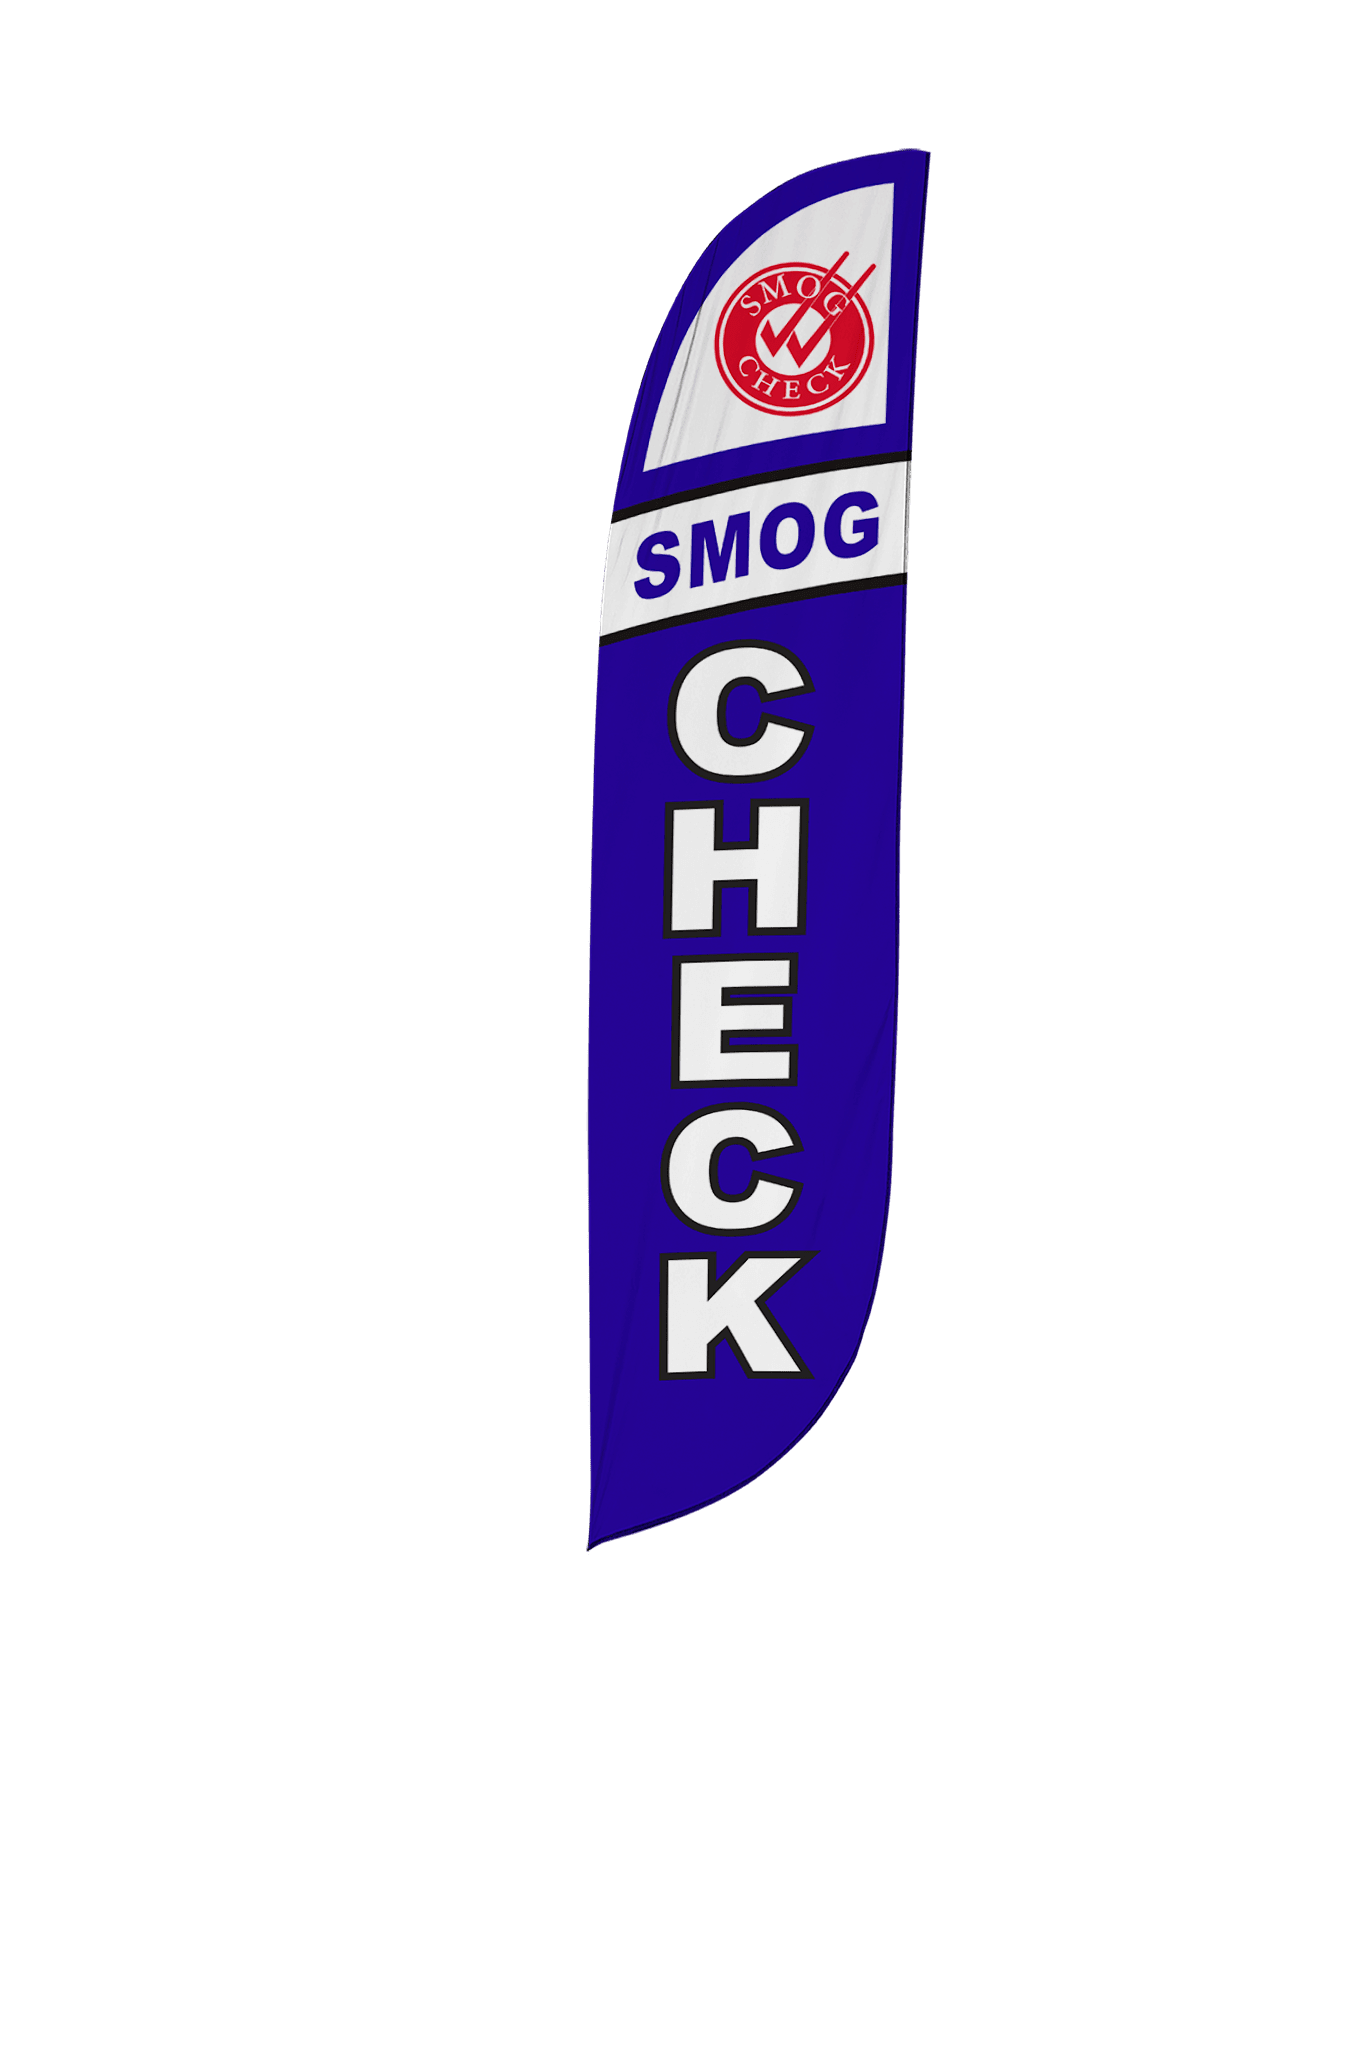 Smog Check Feather Flag 